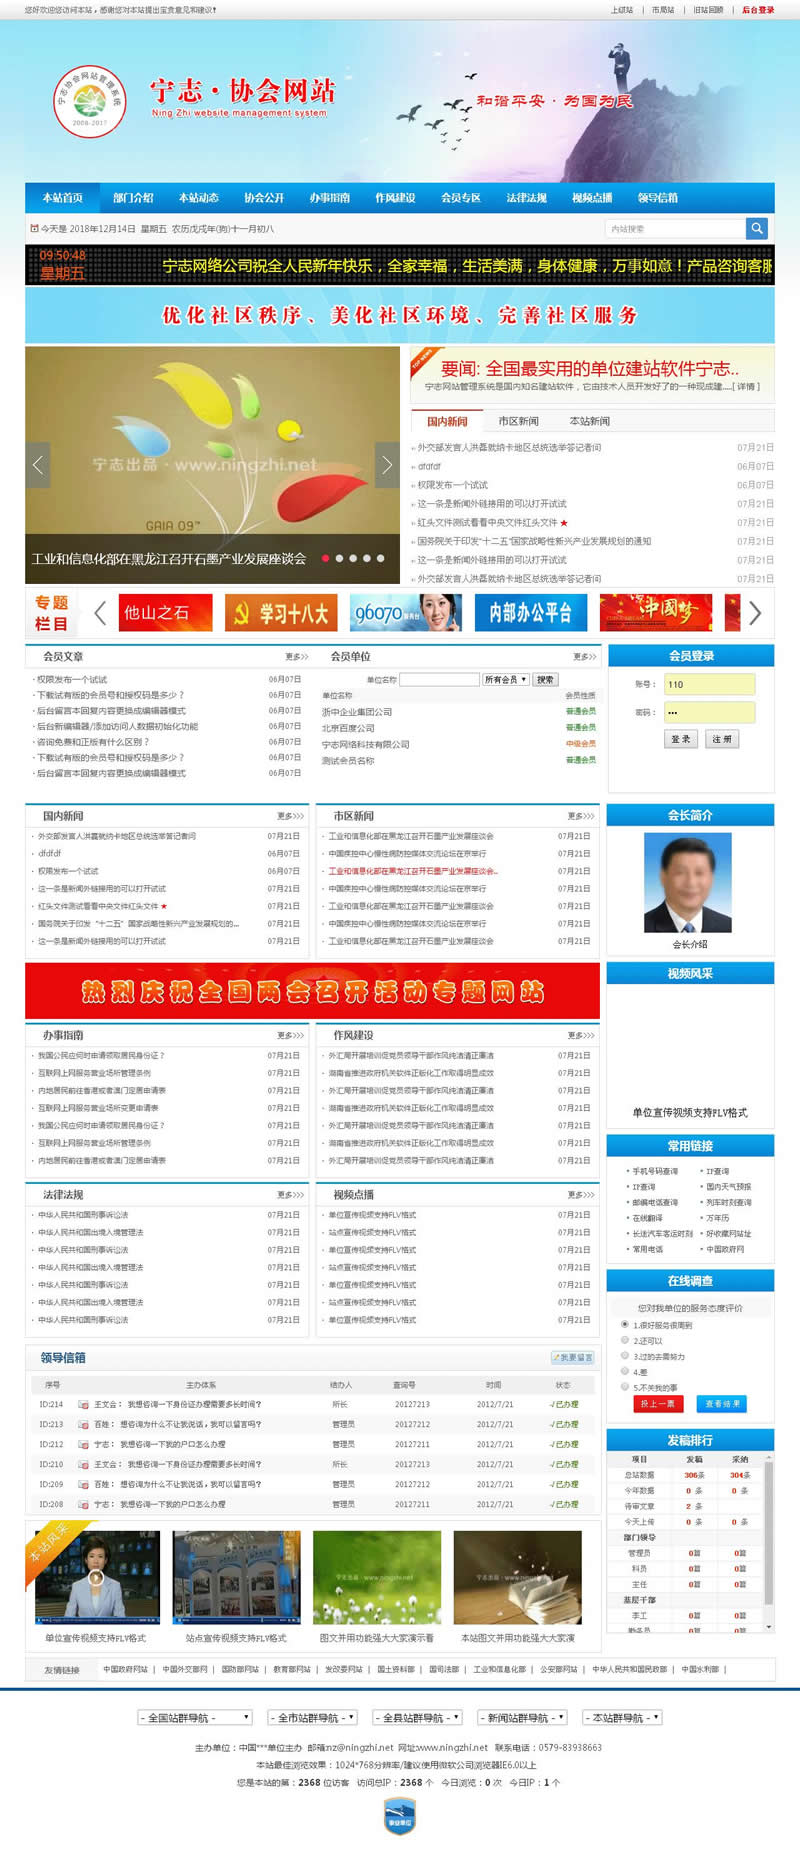 协会工会团体门户网站系统 v2020.7.31-何以博客